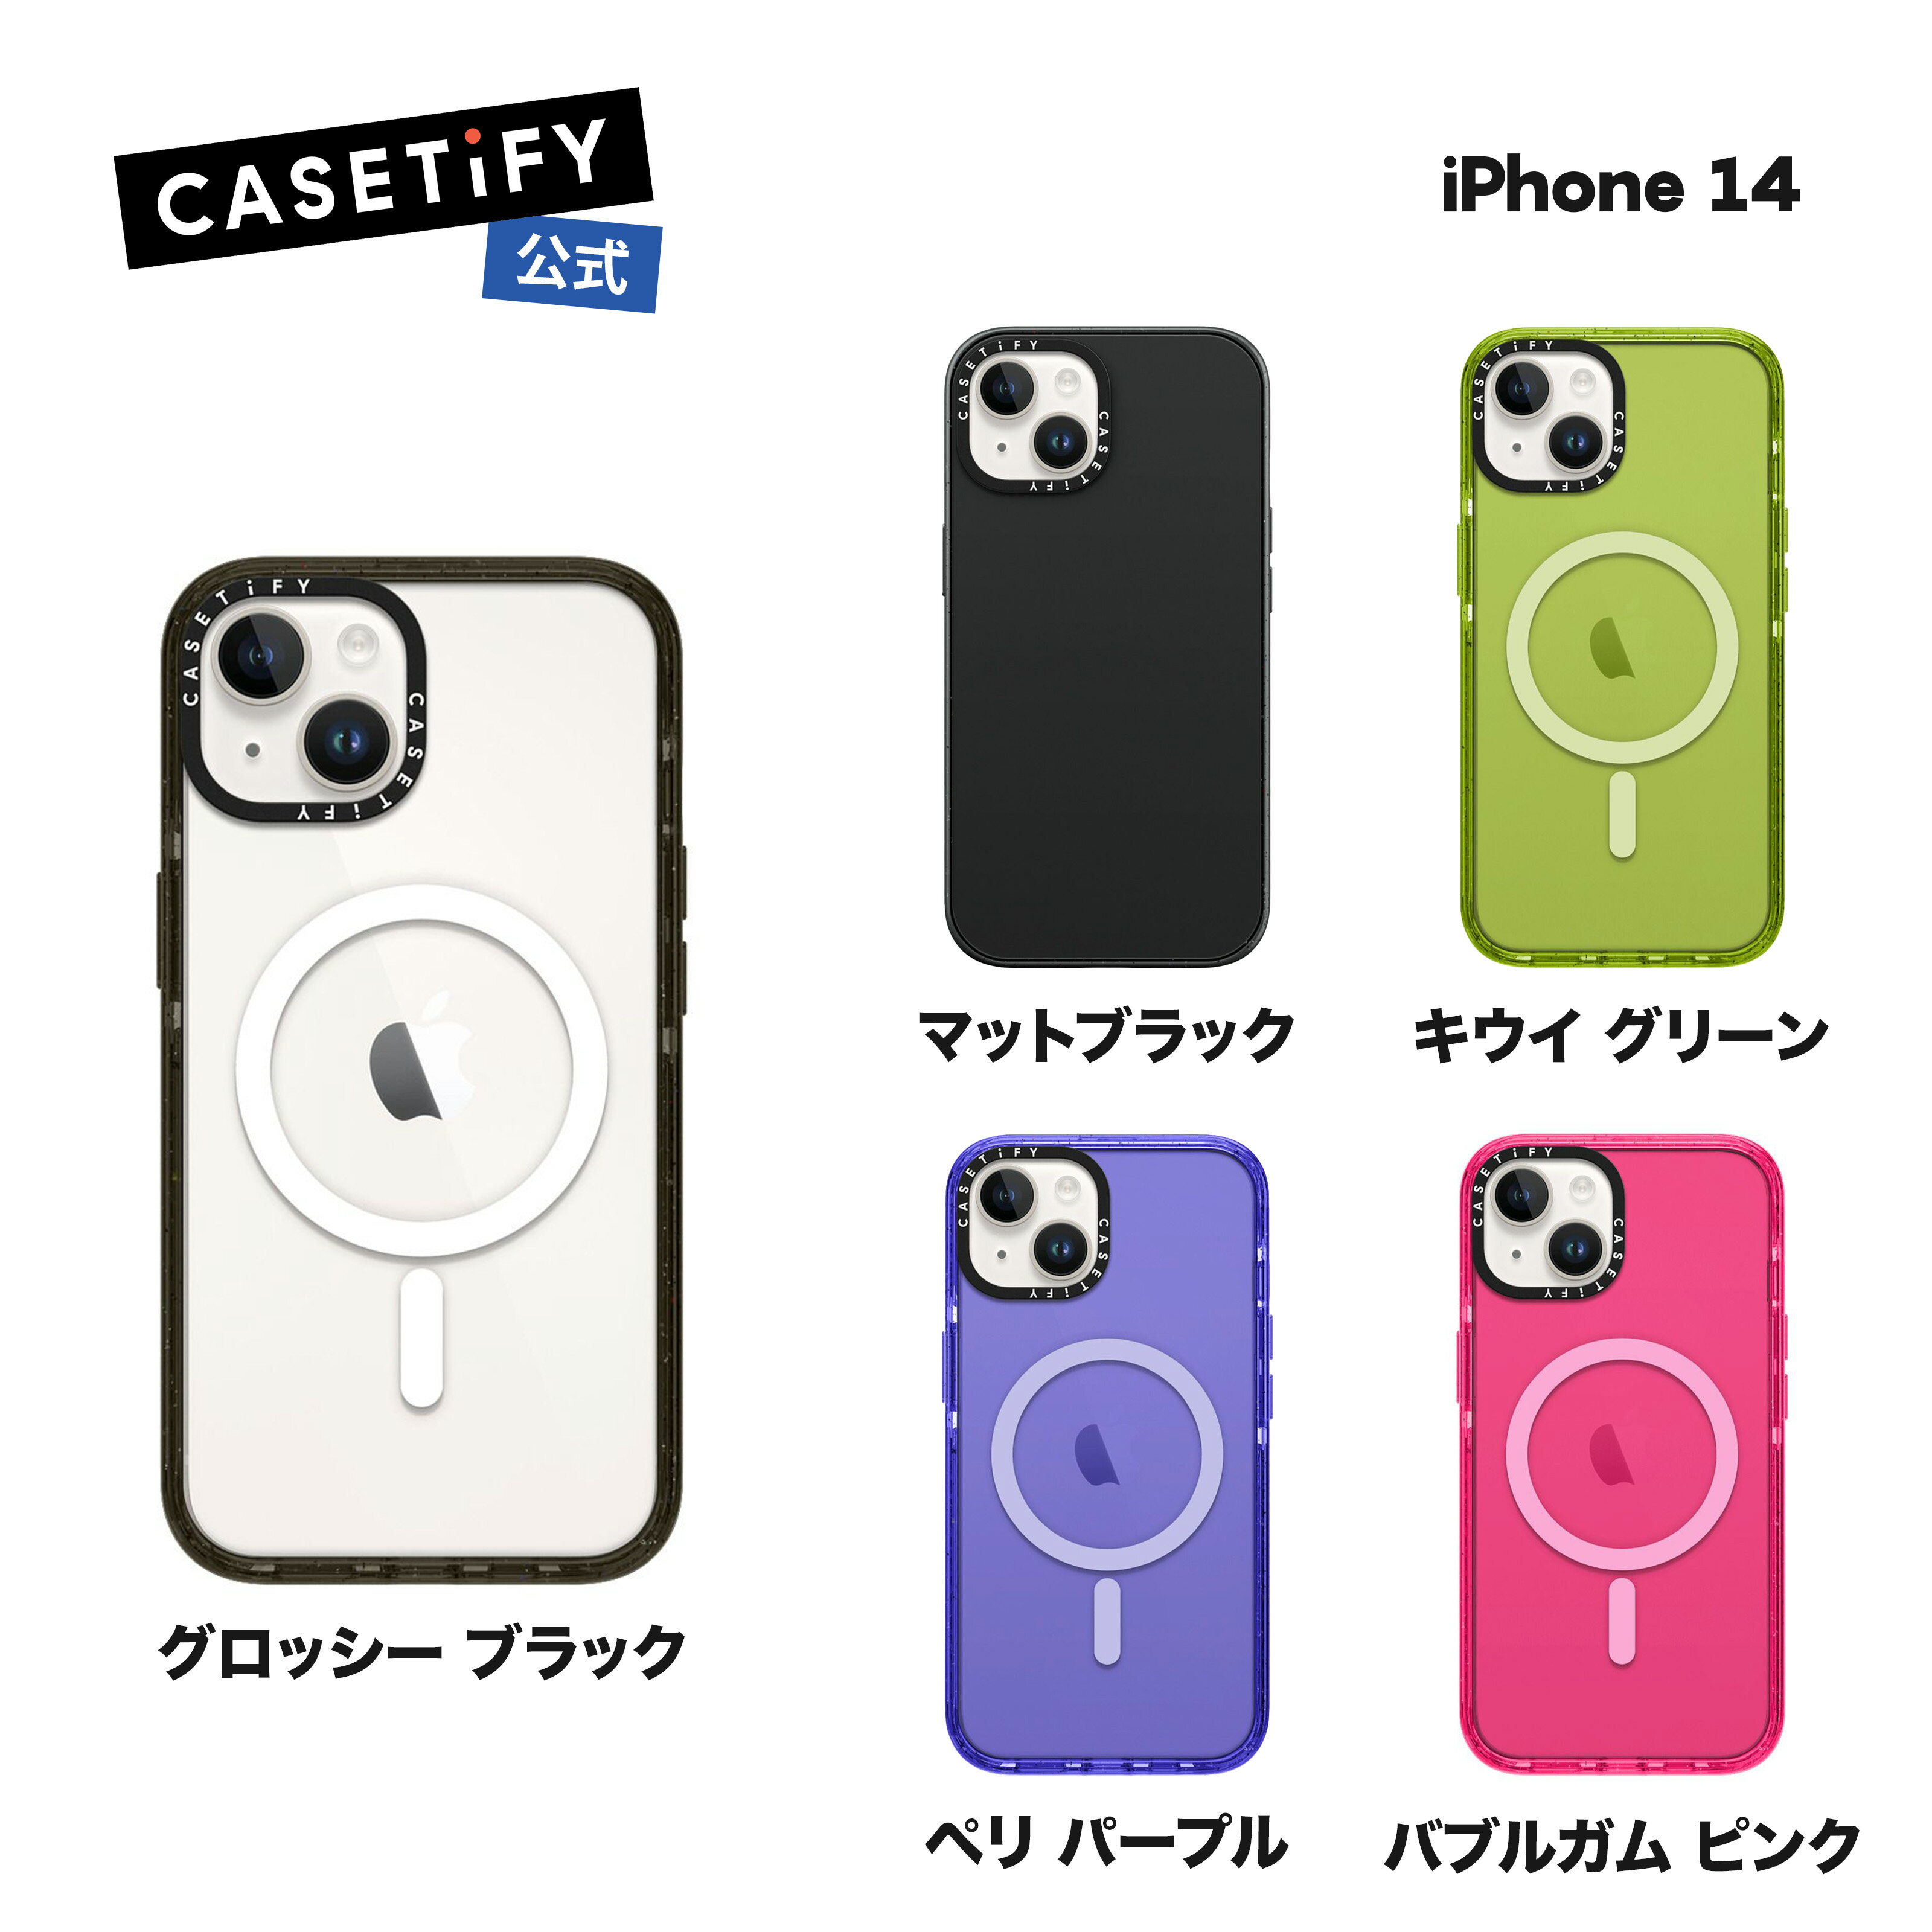  CASETiFY iPhone14 MagSafe 対応 インパクトケース 耐衝撃 保護ケース 透明 ワイヤレス充電に対応 MagSafe 対応 マットブラック